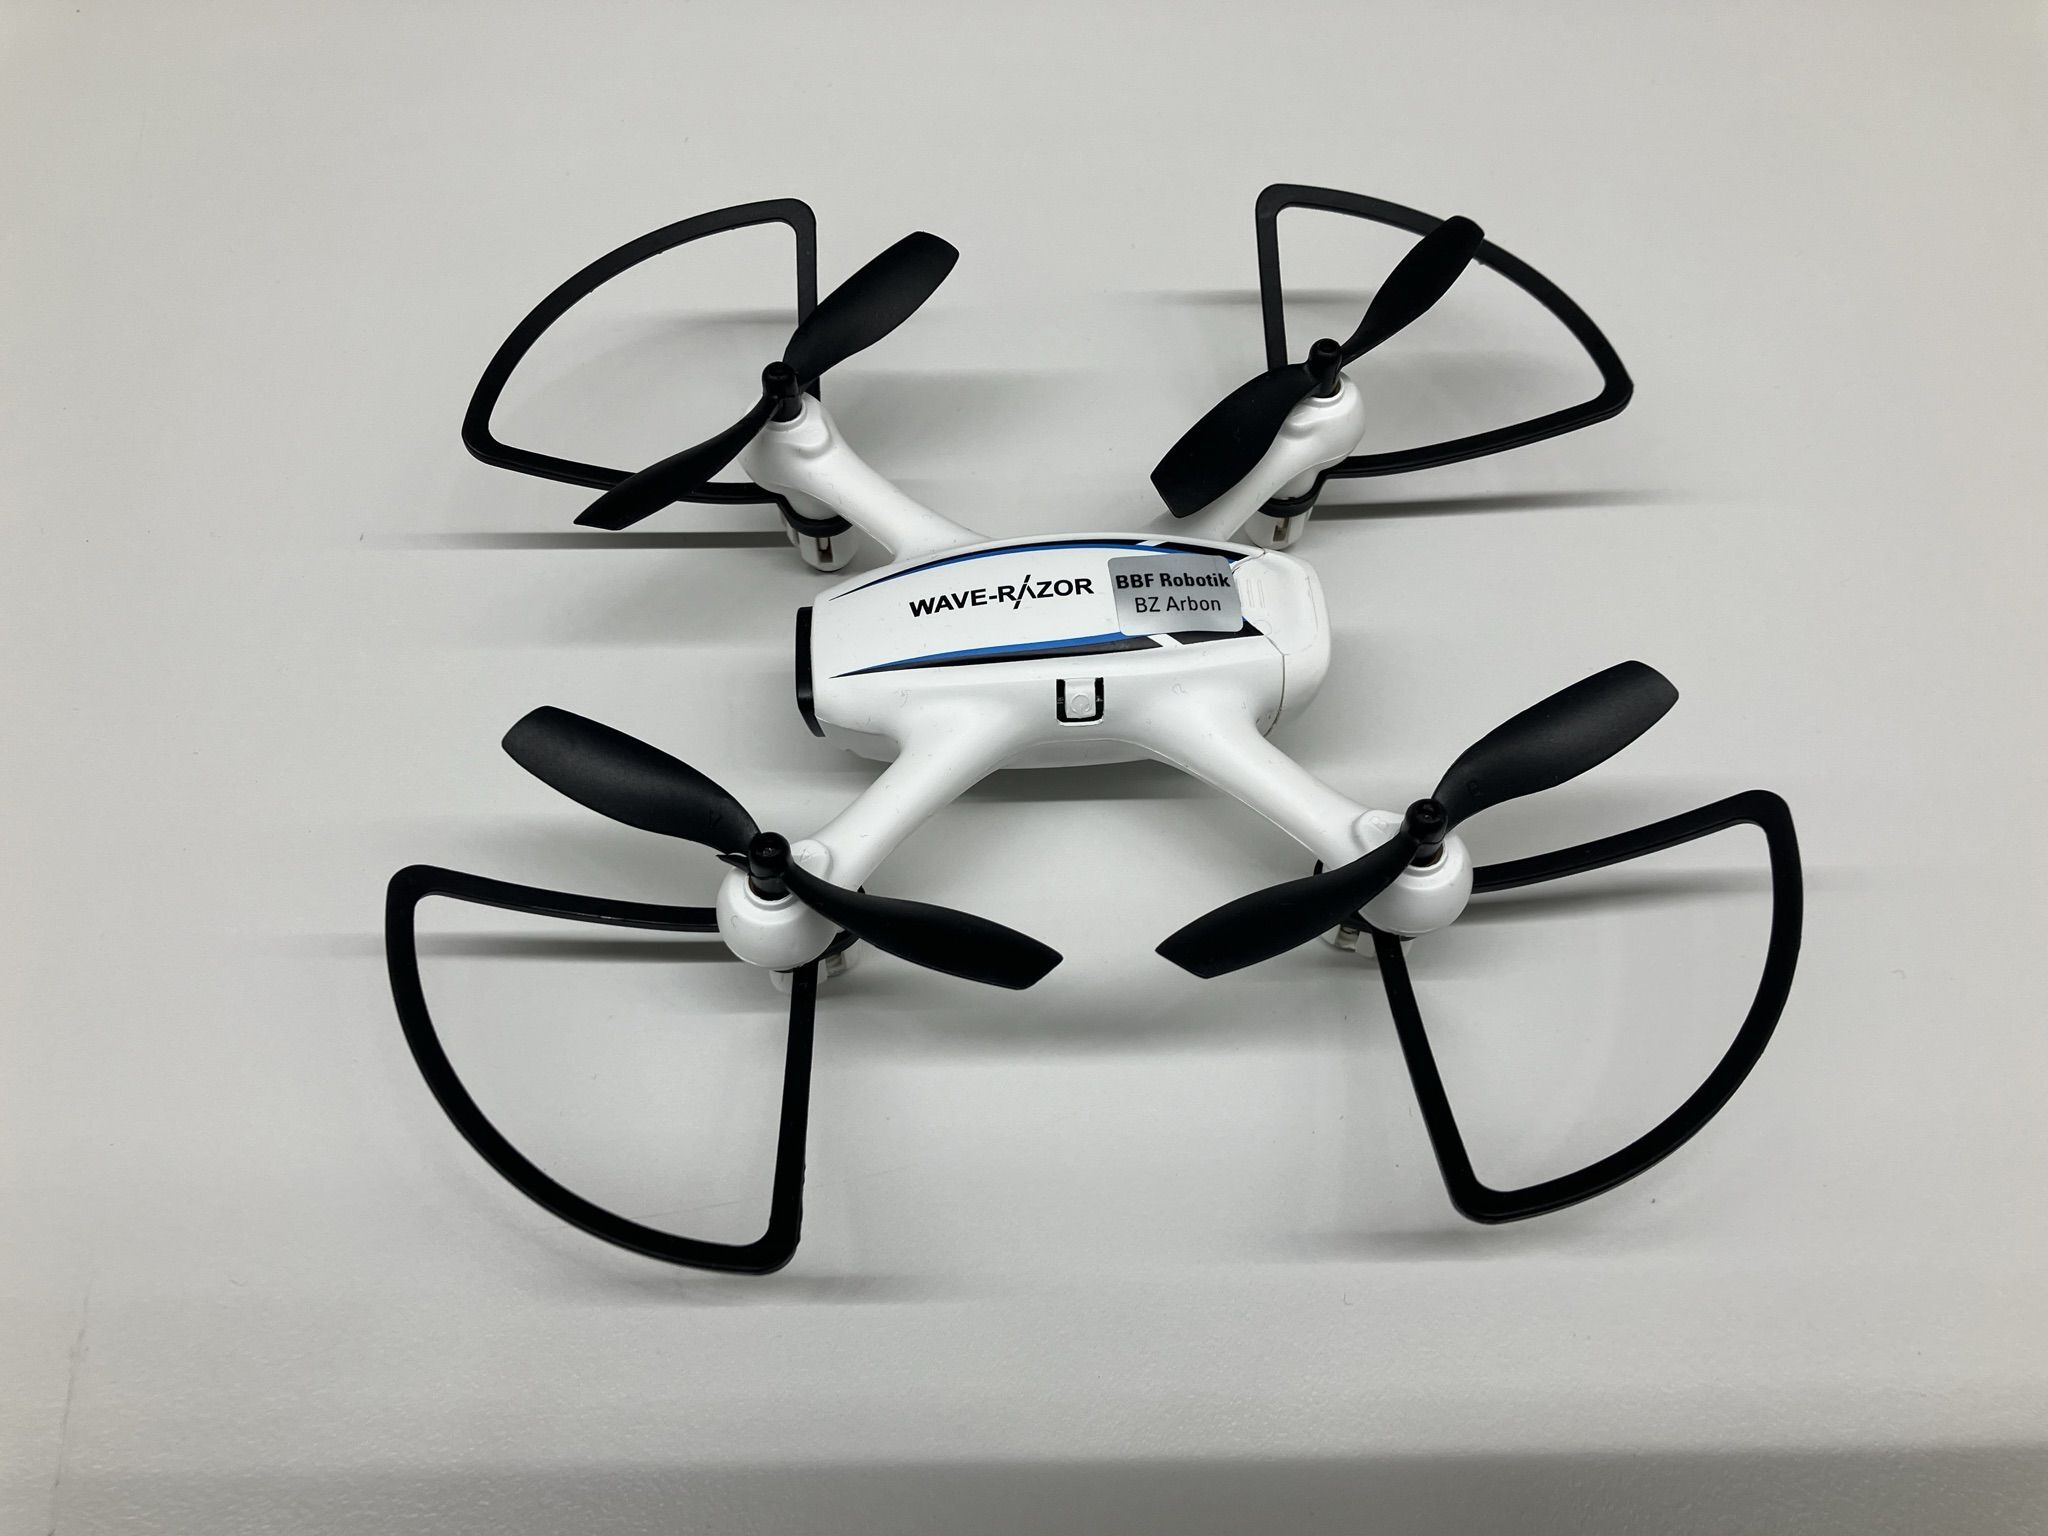 Man sieht eine moderne weisse Drohne mit vier schwarzen Rotoren. Die Drohne wurde von den Industrierobotern montiert.